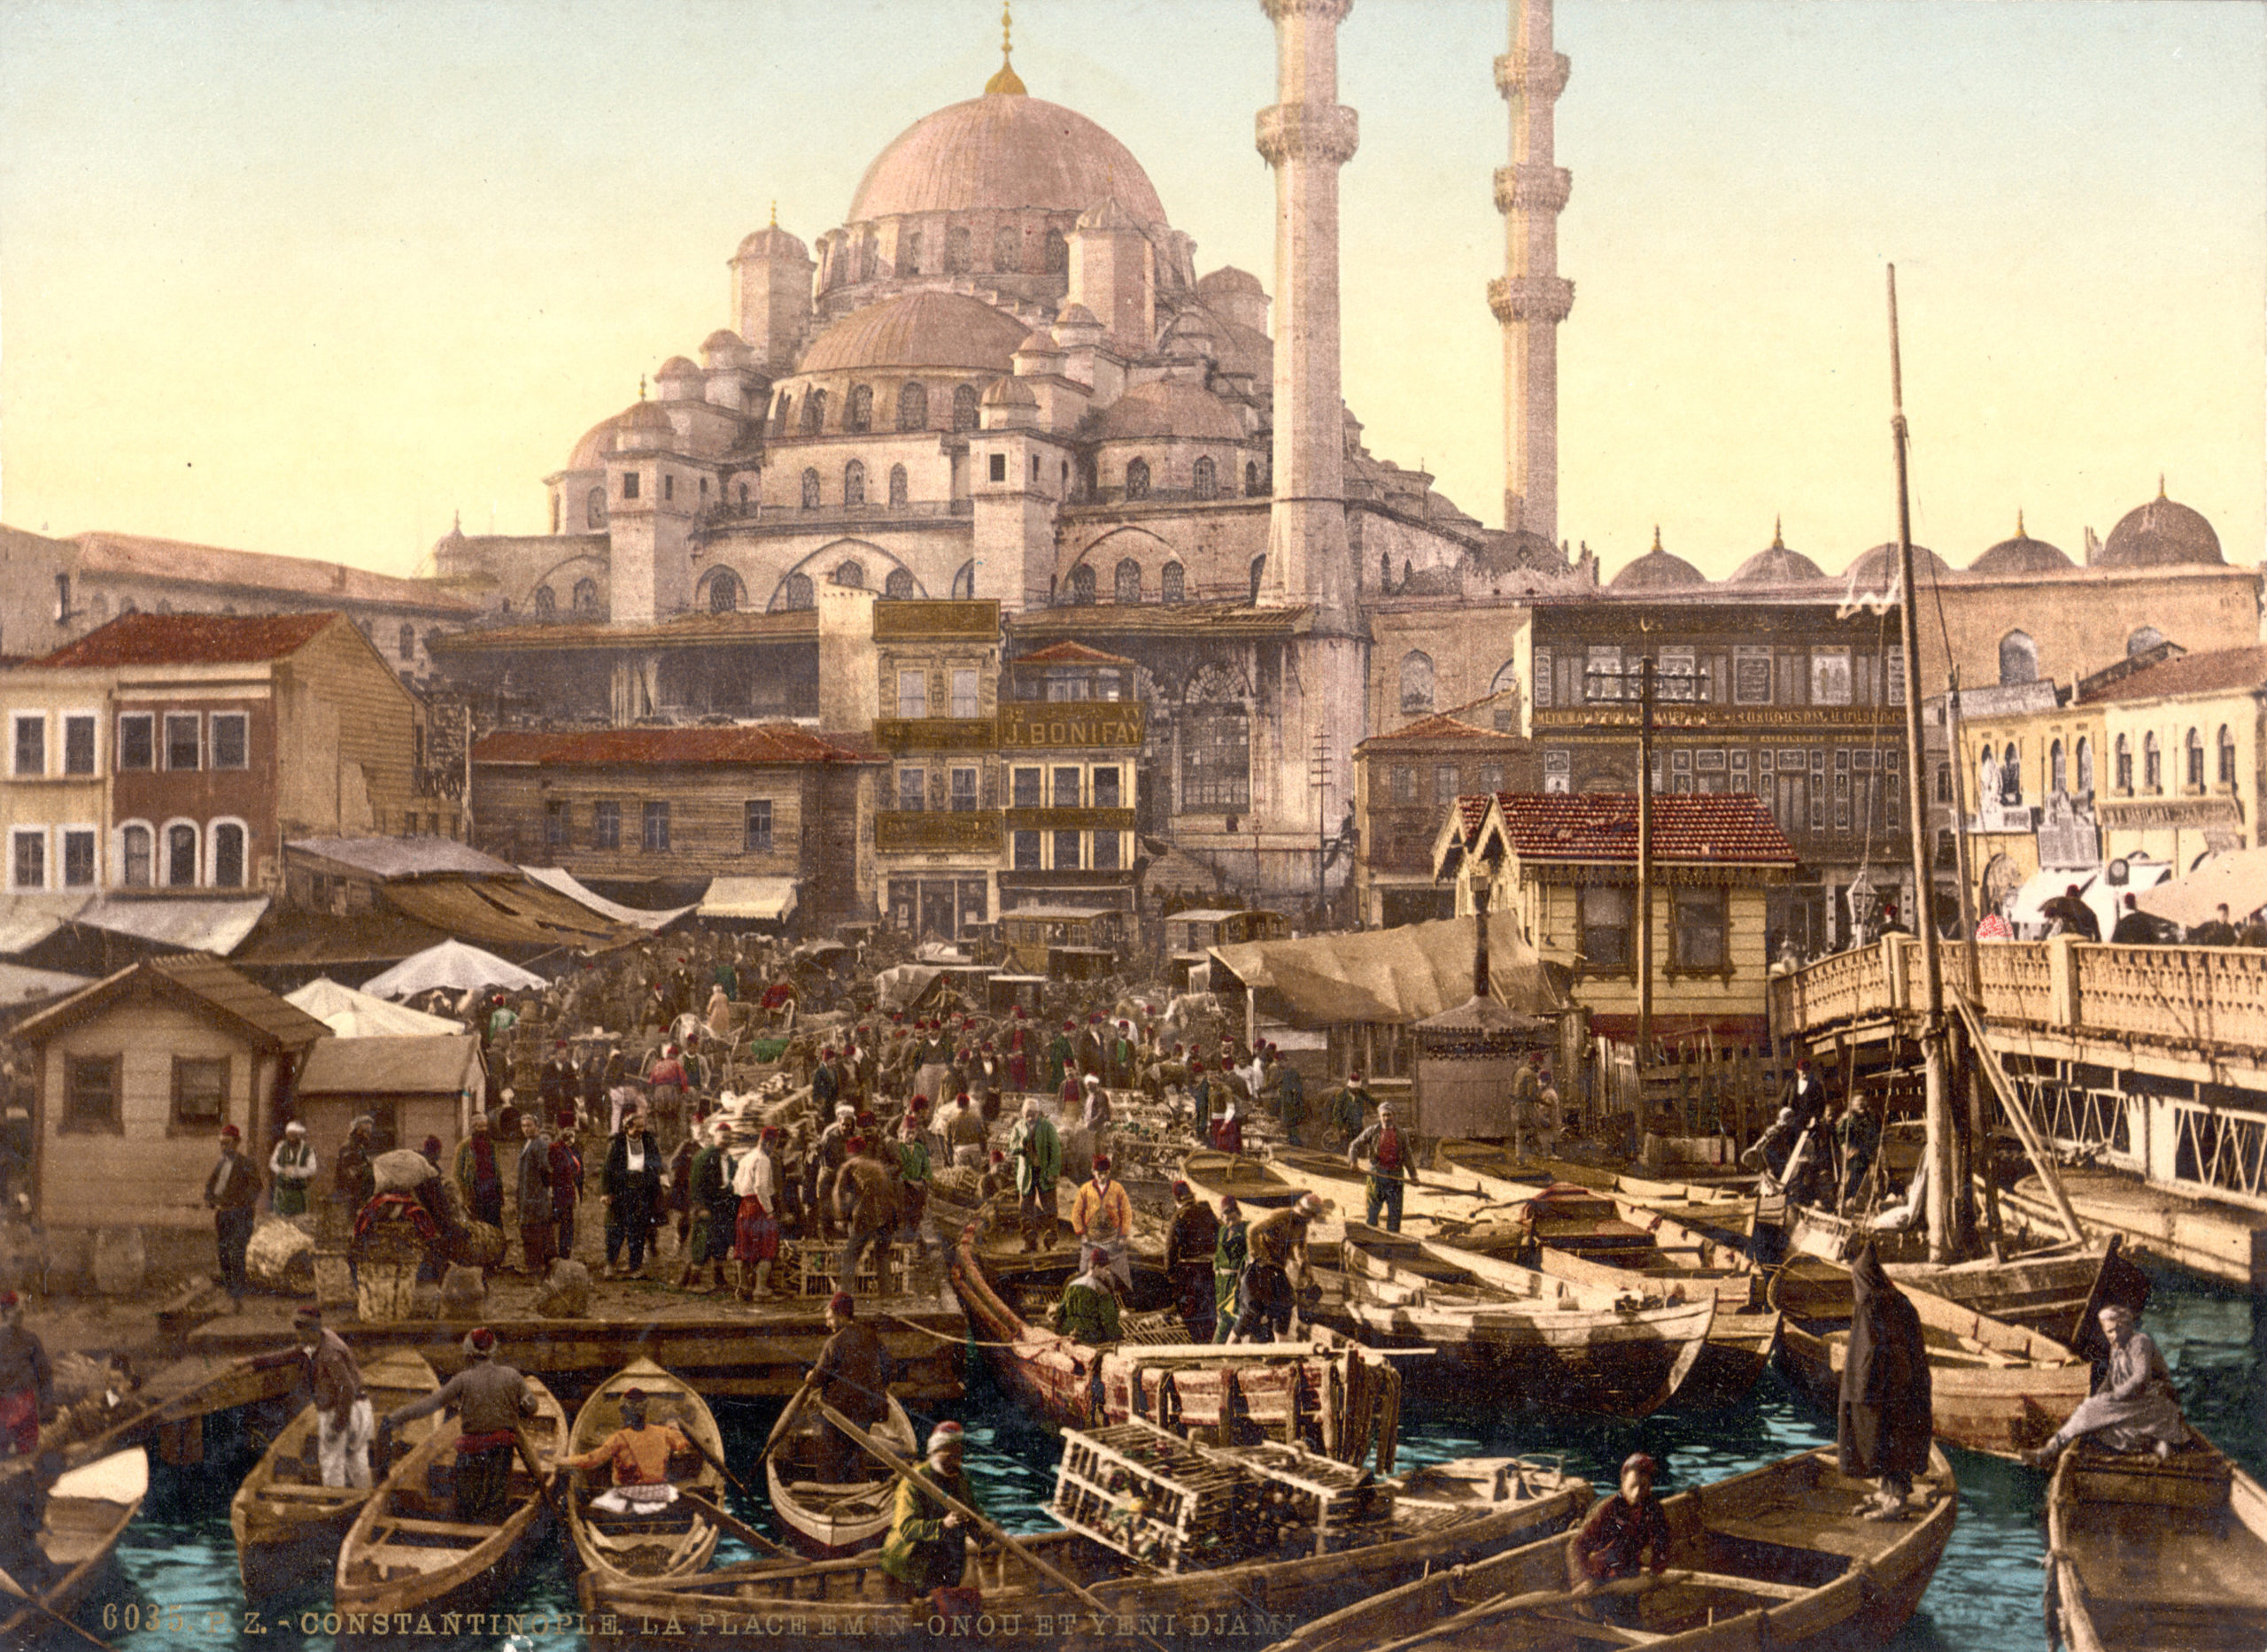  O Império Otomano está voltando?